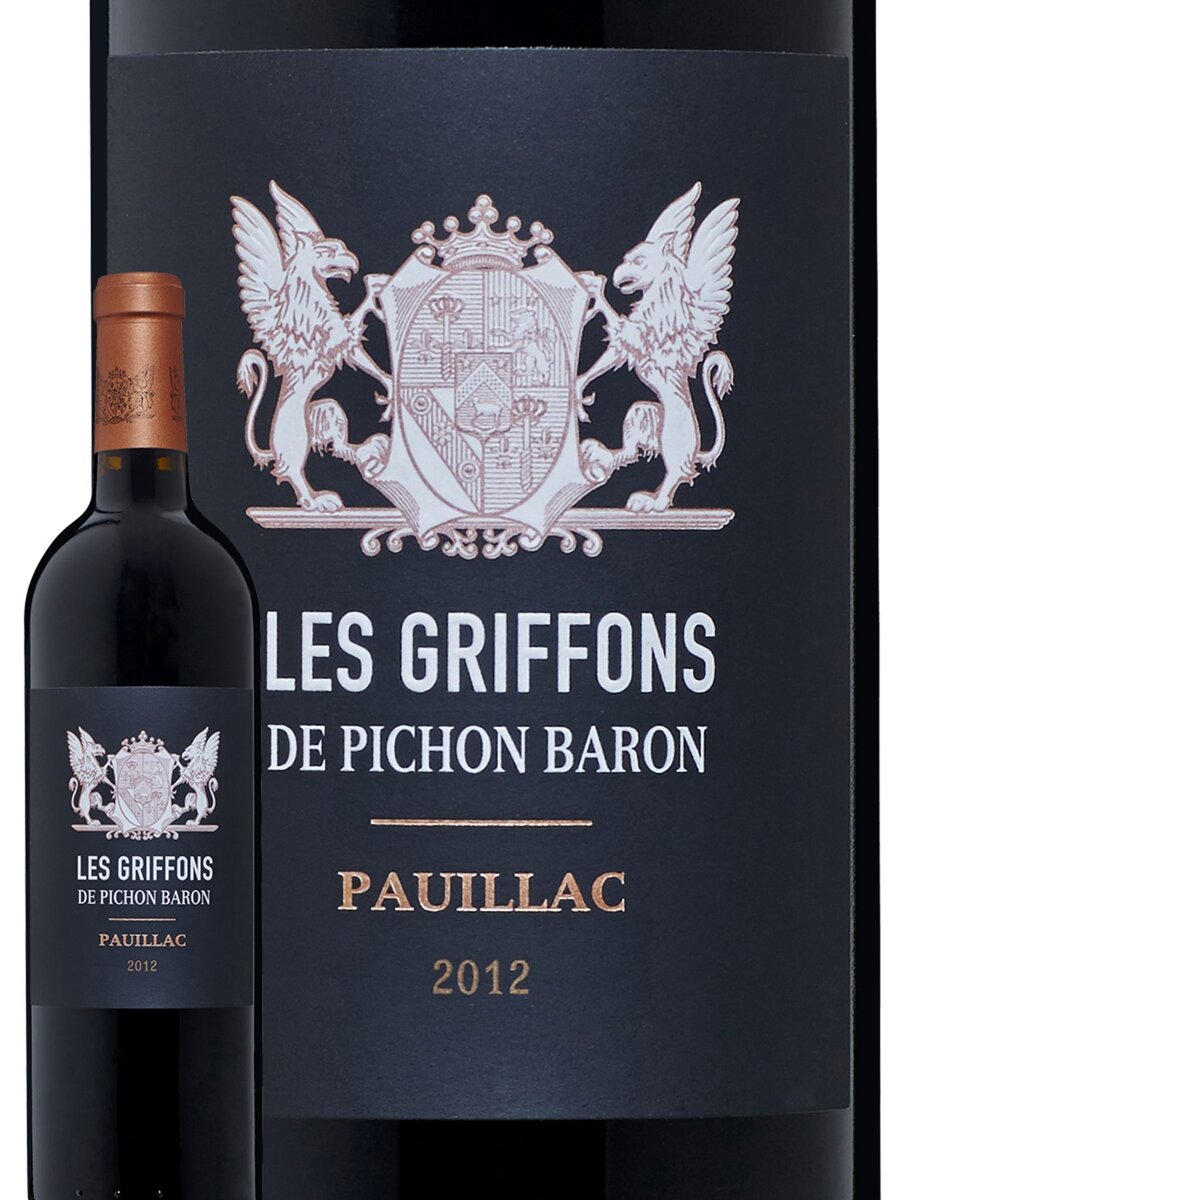 Les Griffons de Pichon Baron Pauillac Grand Cru Classé Rouge 2012